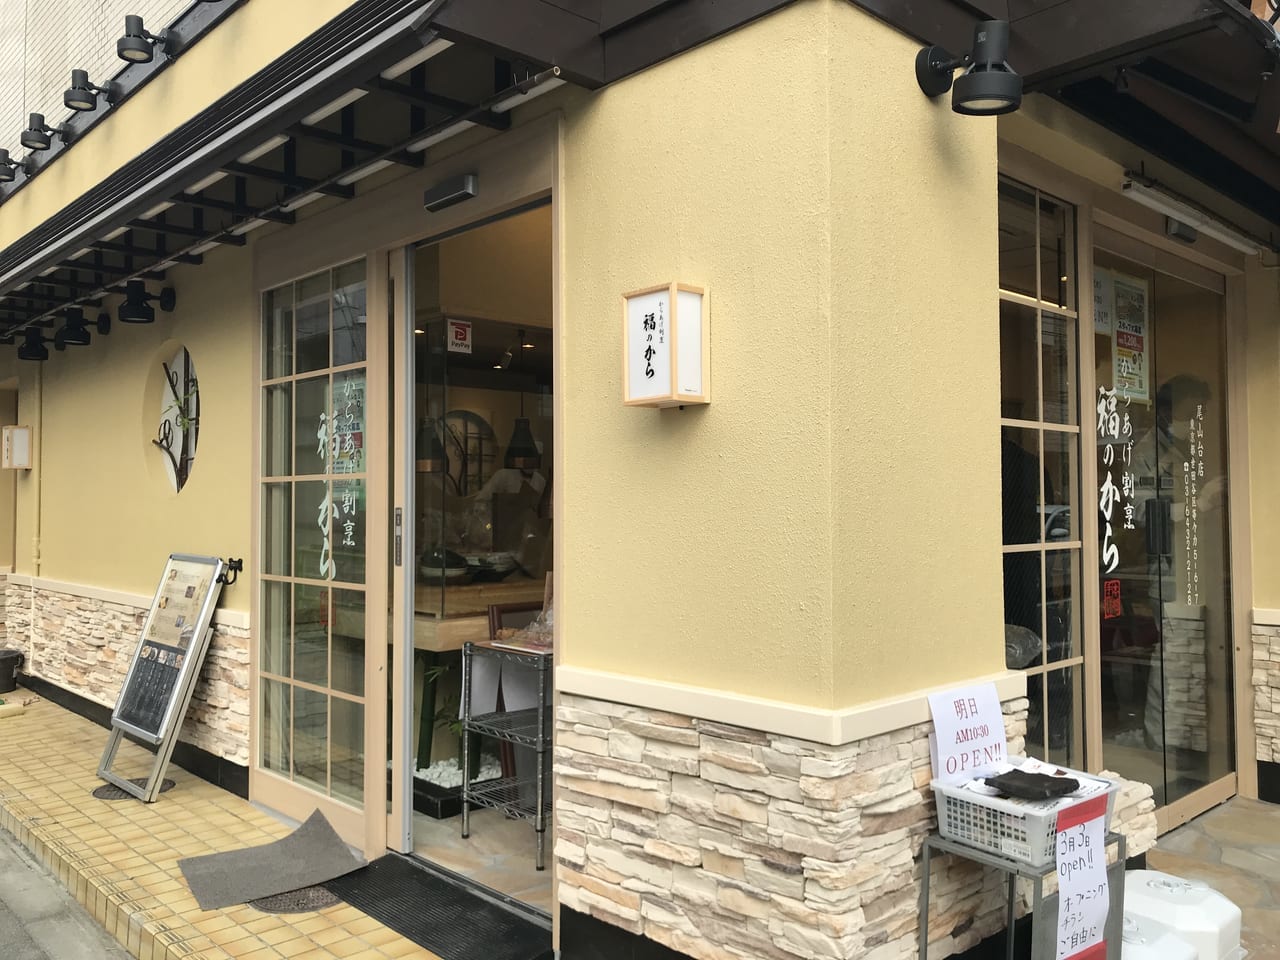 世田谷区尾山台「からあげ割烹福のから尾山台店」が道を挟んで反対側に移転2022年3月3日ひな祭りの日にリニューアルオープンします。